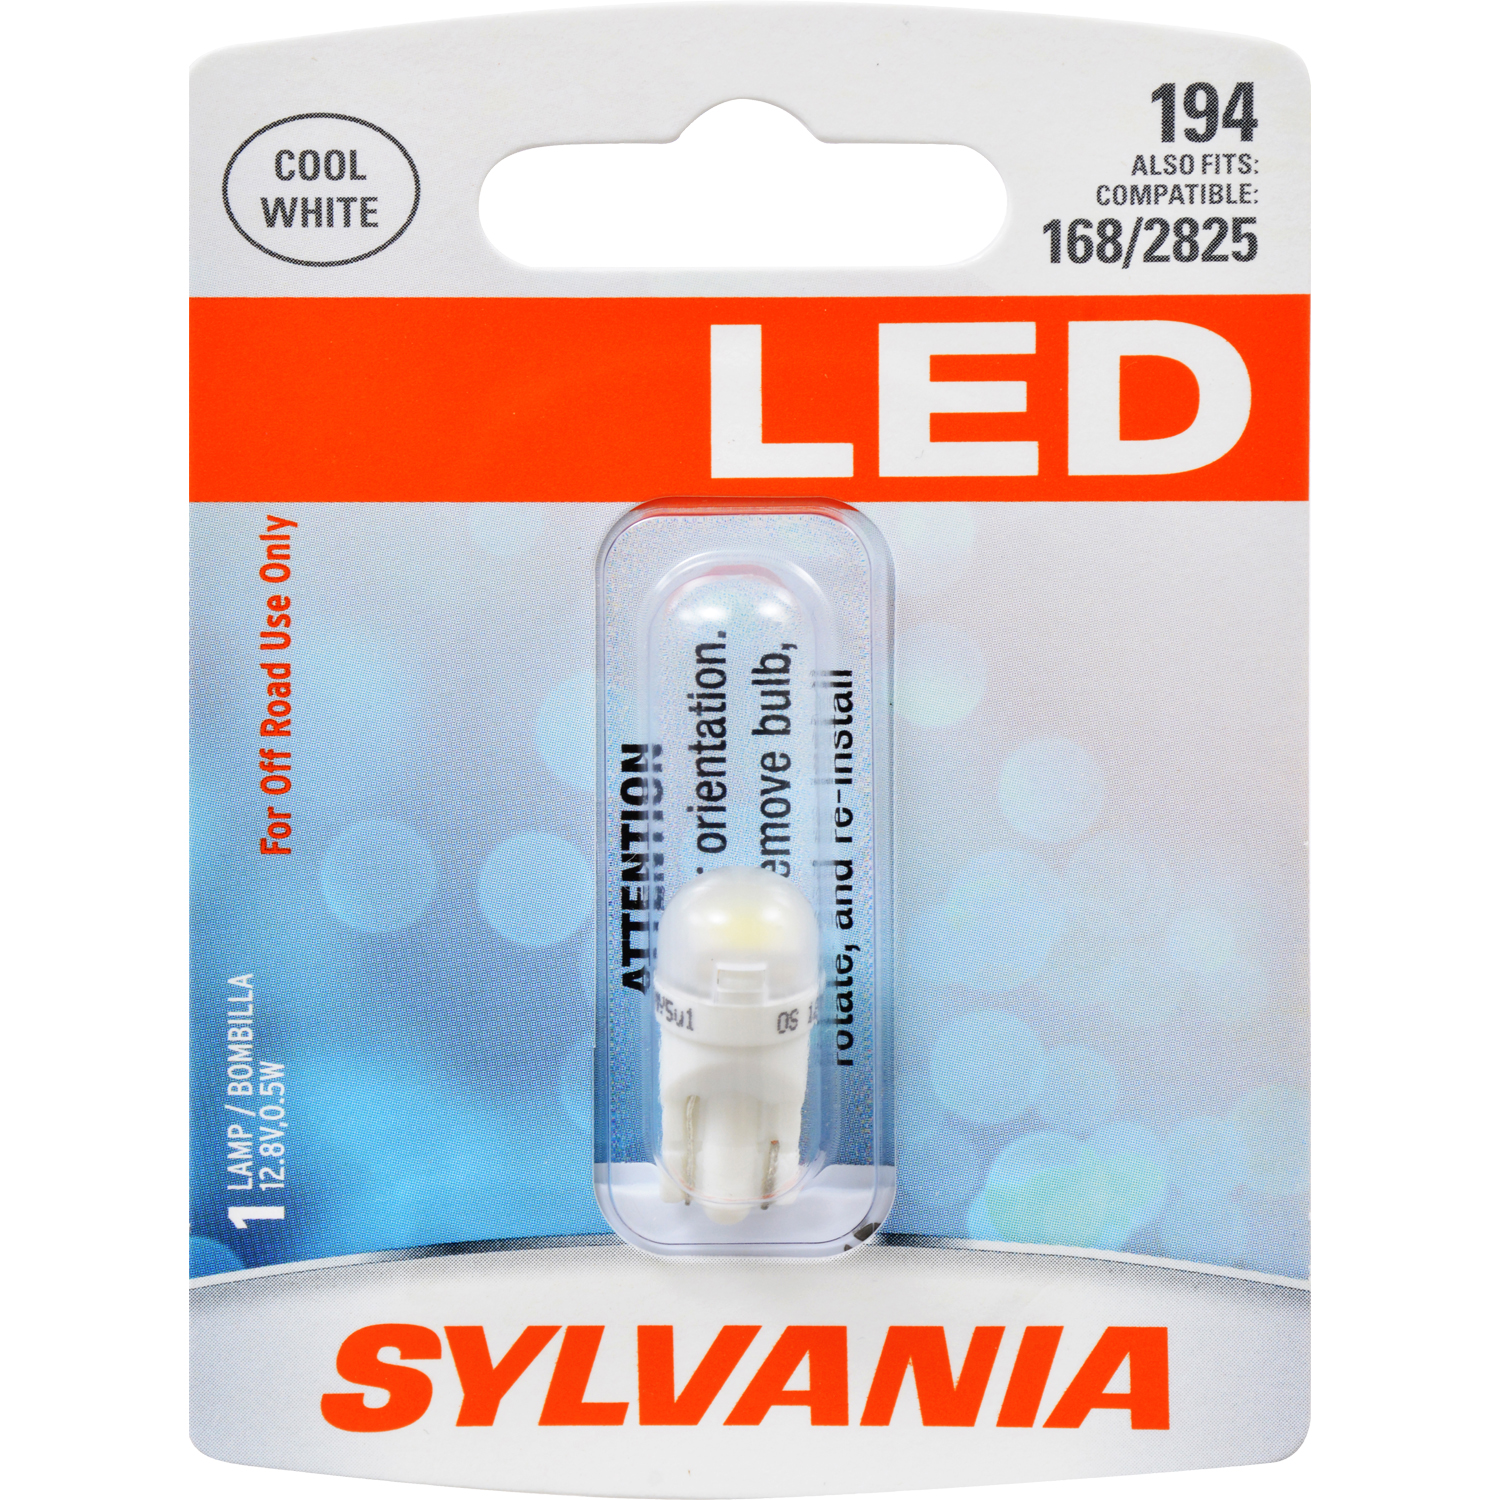 Sylvania NEW Sylvania SYLVANIA 194 T10 W5W White LED Bulb, (Contains 1 Bulb) 33052 12V 0.5W